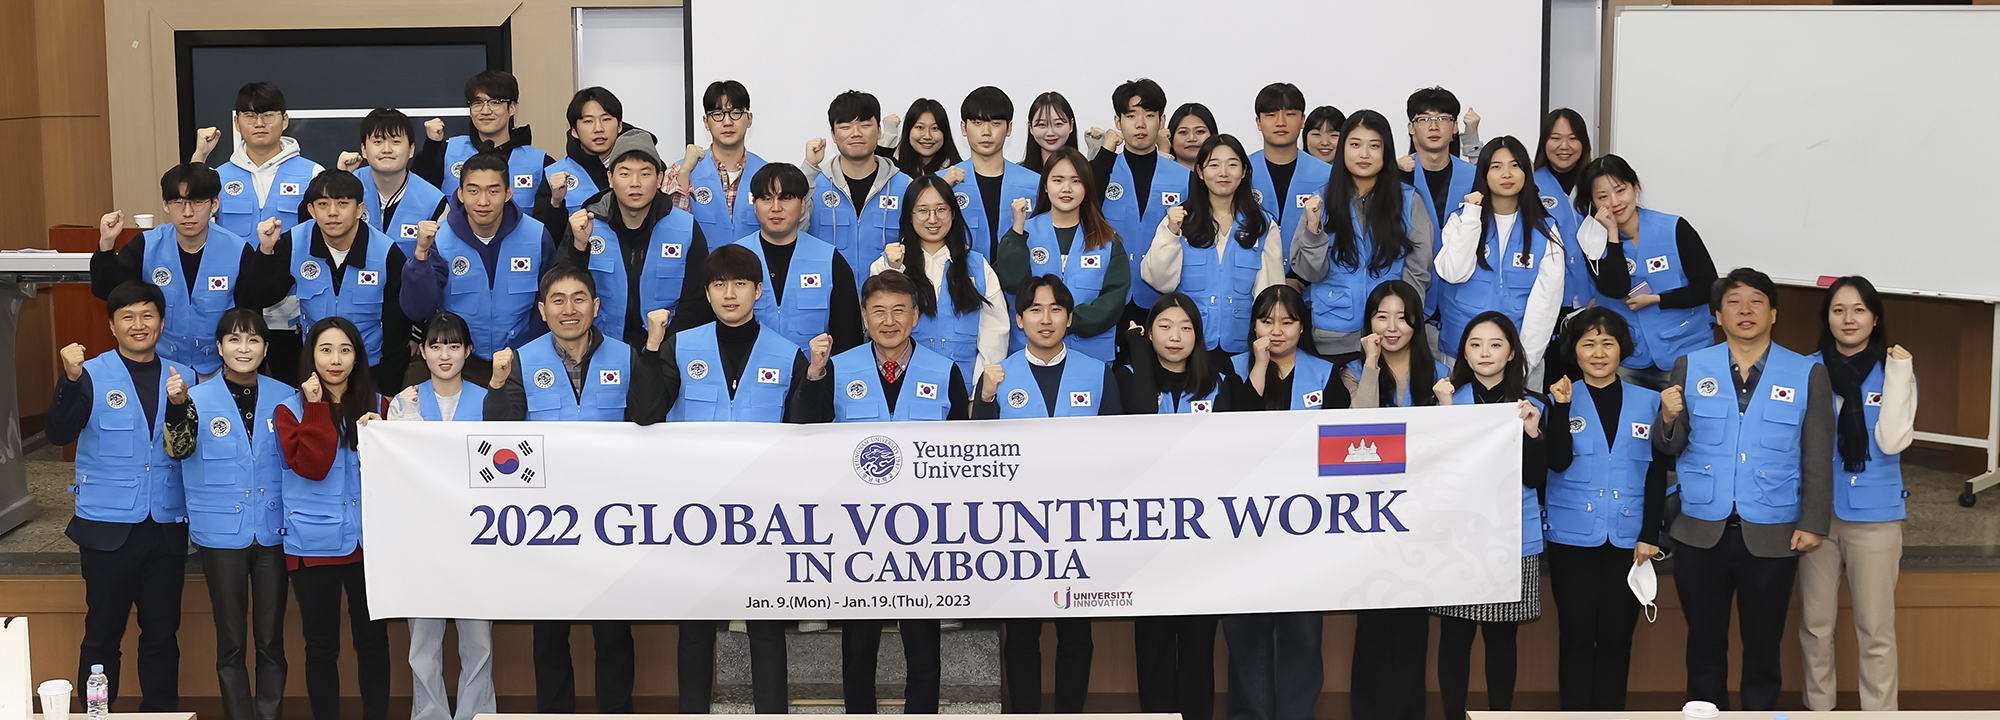 [해외자원봉사] 2022학년도 동계 해외자원봉사대 사전 프로그램